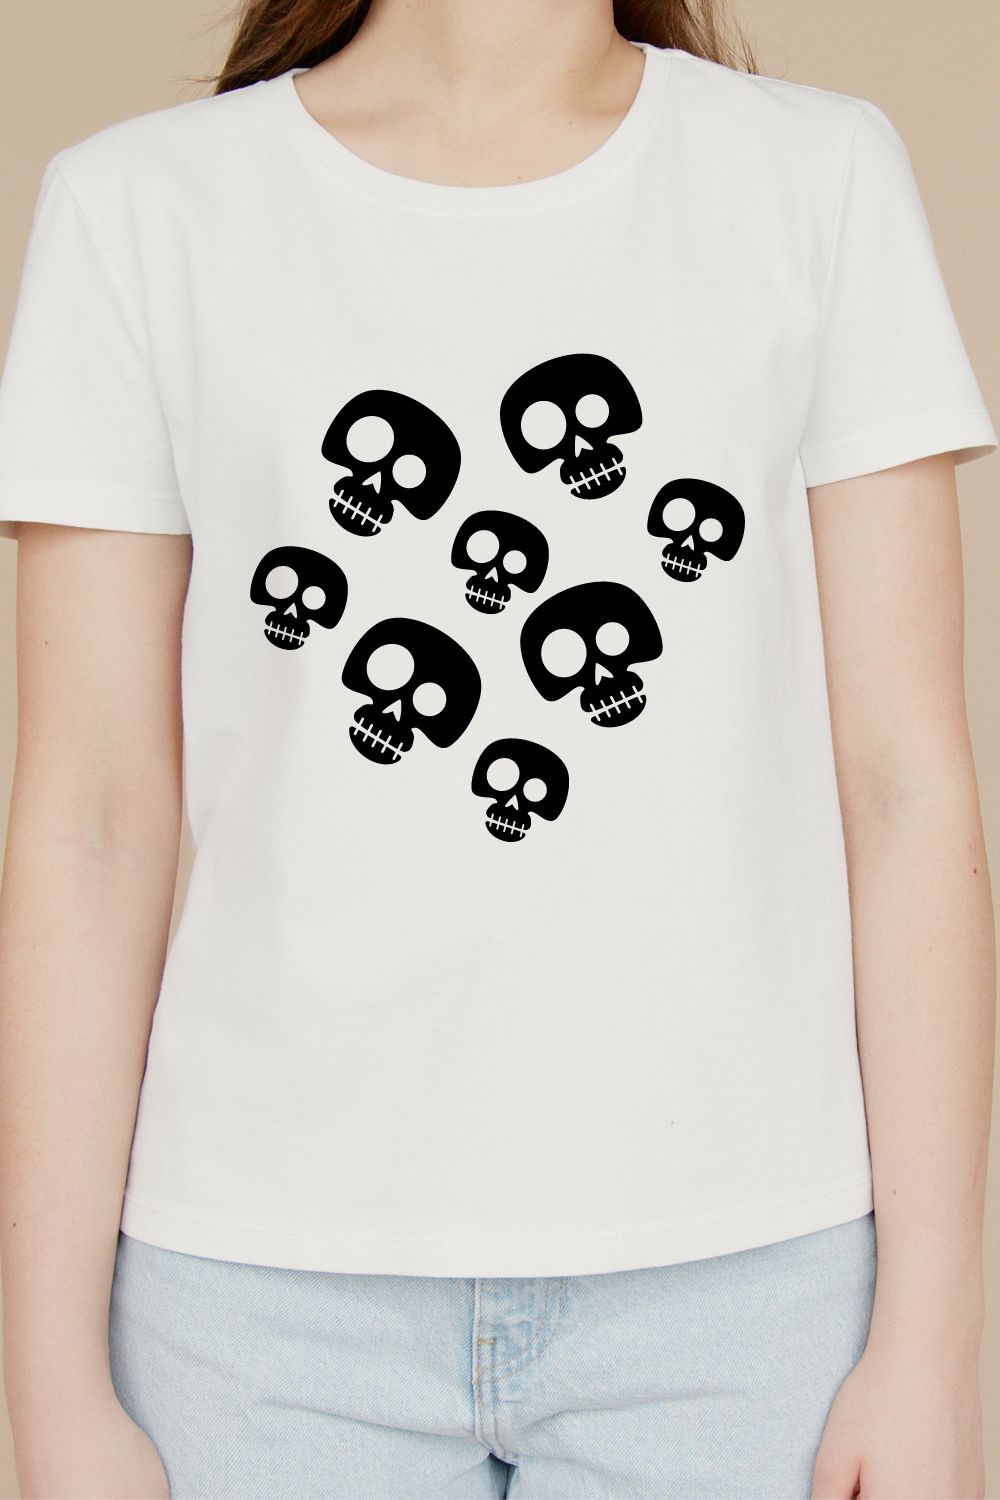 Skull T-shirt Design pinterest preview image.